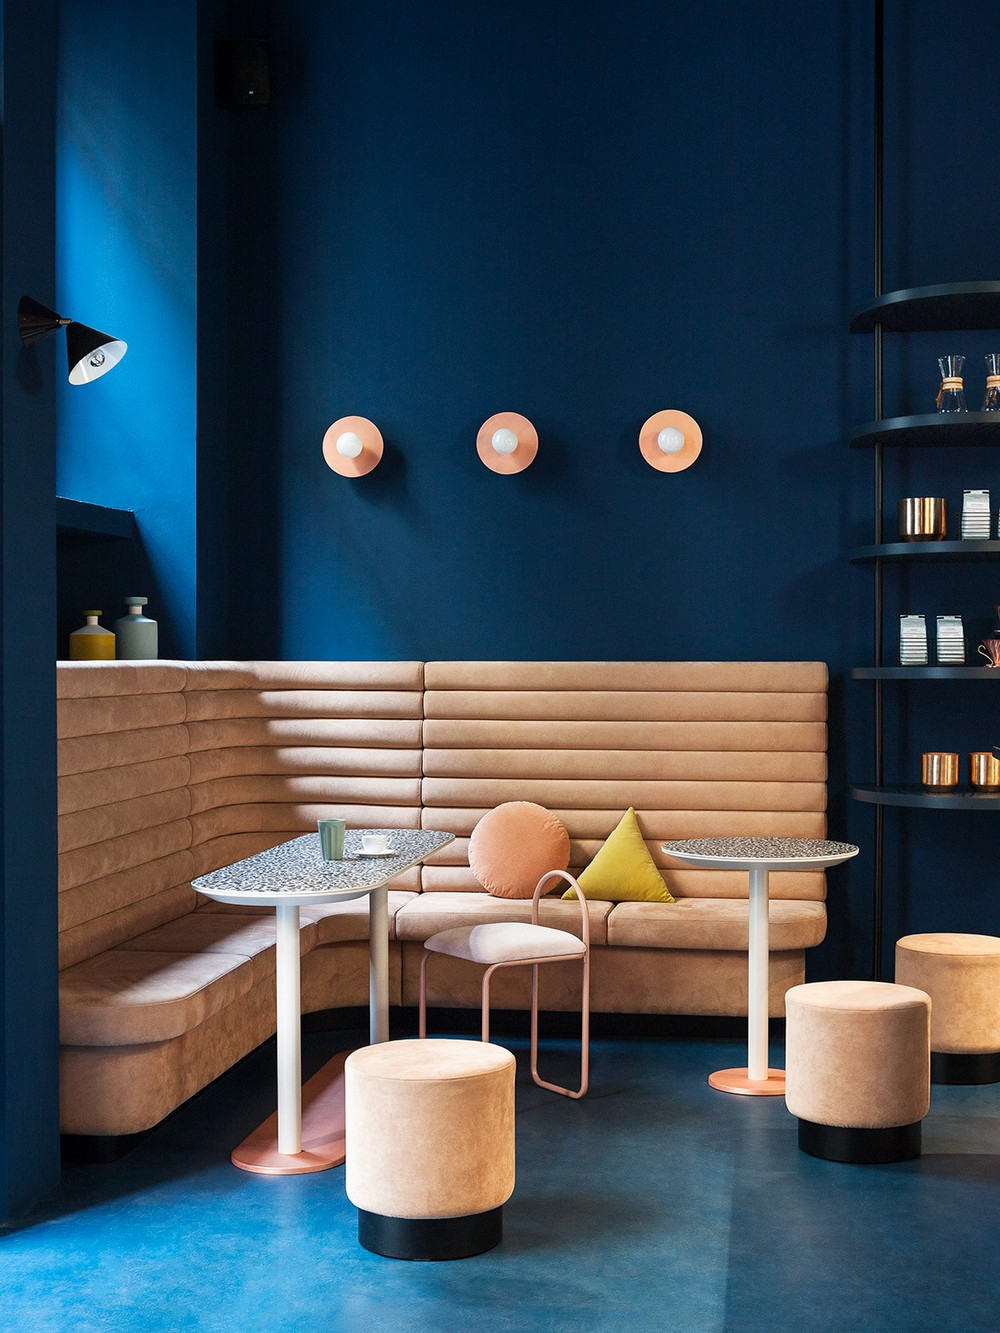 Cutting-edge Contemporary Interior Design: Interiors by Studiopepe